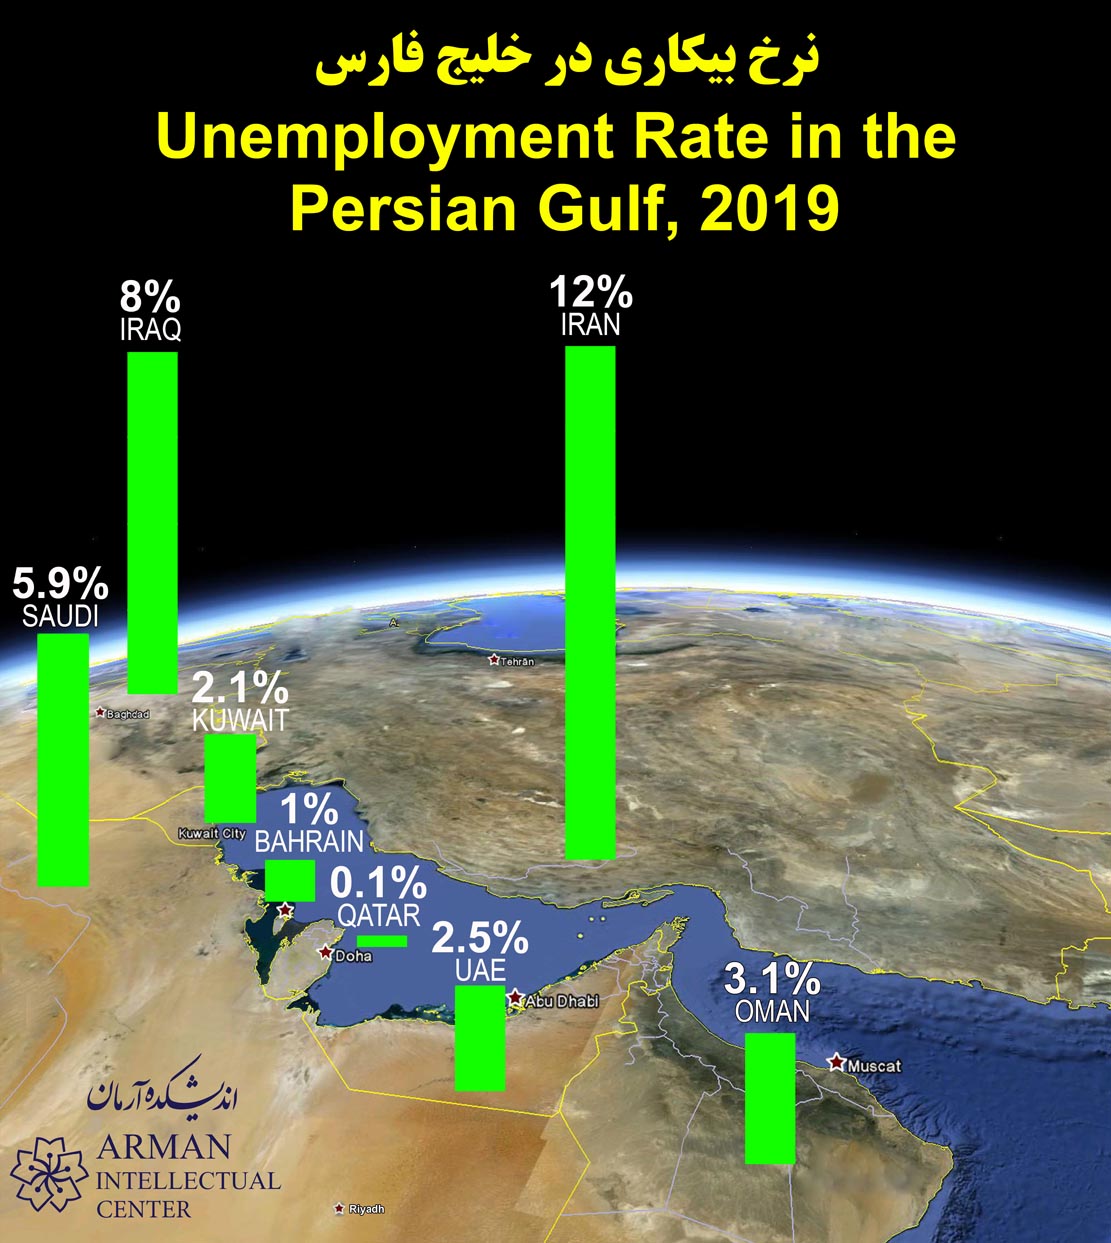 Unemployment Rate of persian gulf country qatar saudi kuwait iran iraq oman bahrain